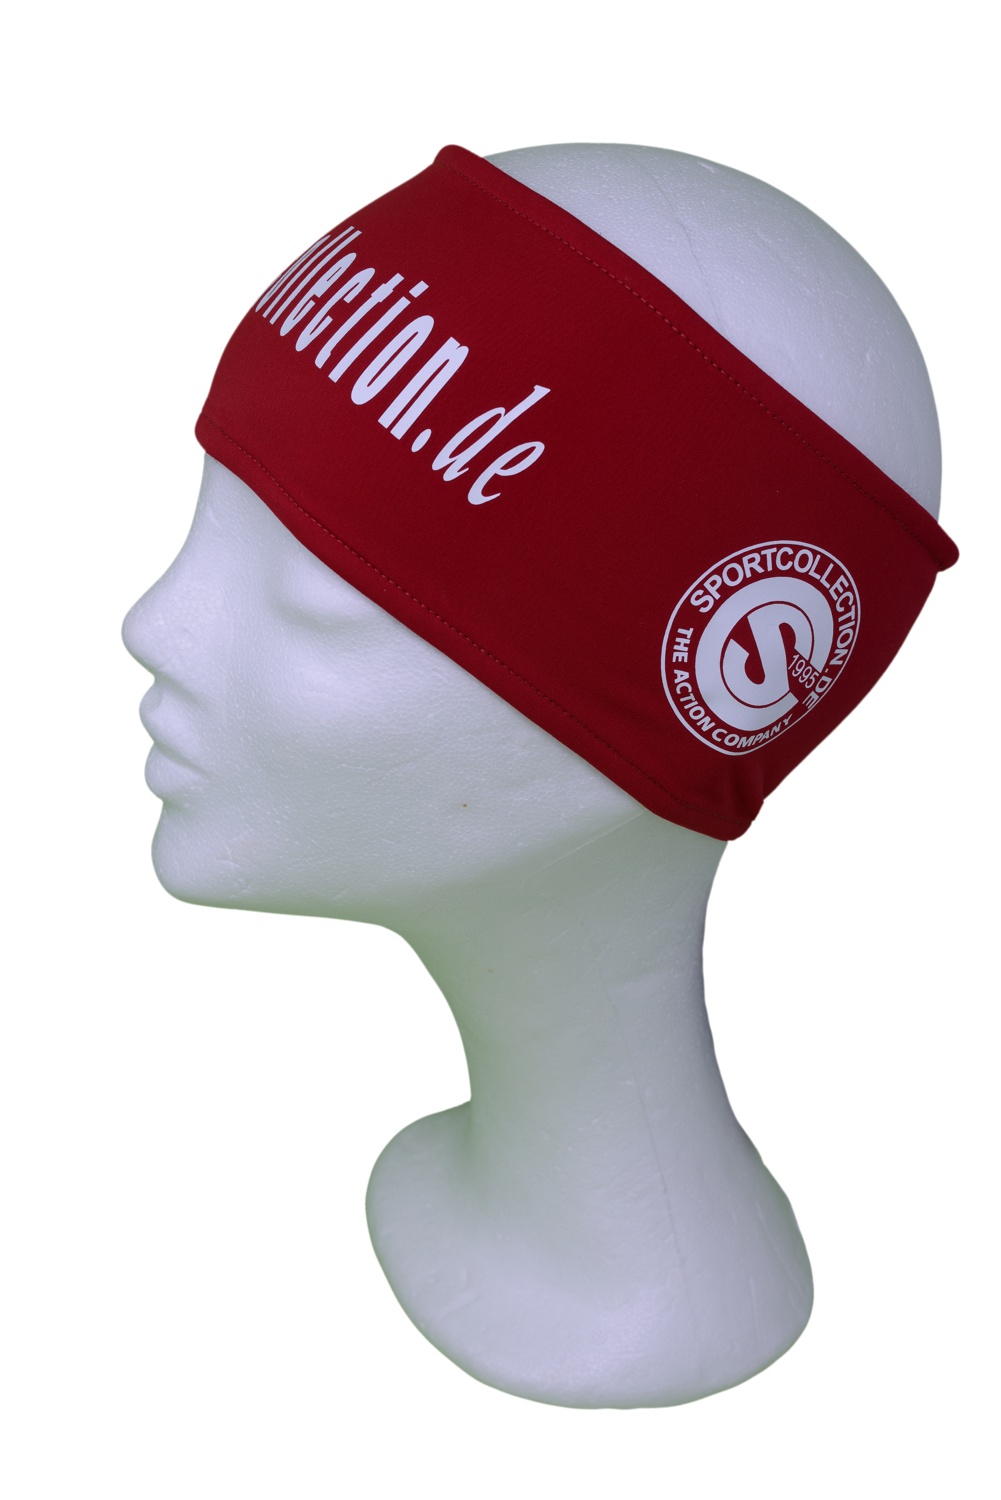 Stöhr Stirnband Rot-Weiß-Text-Groß-Logo